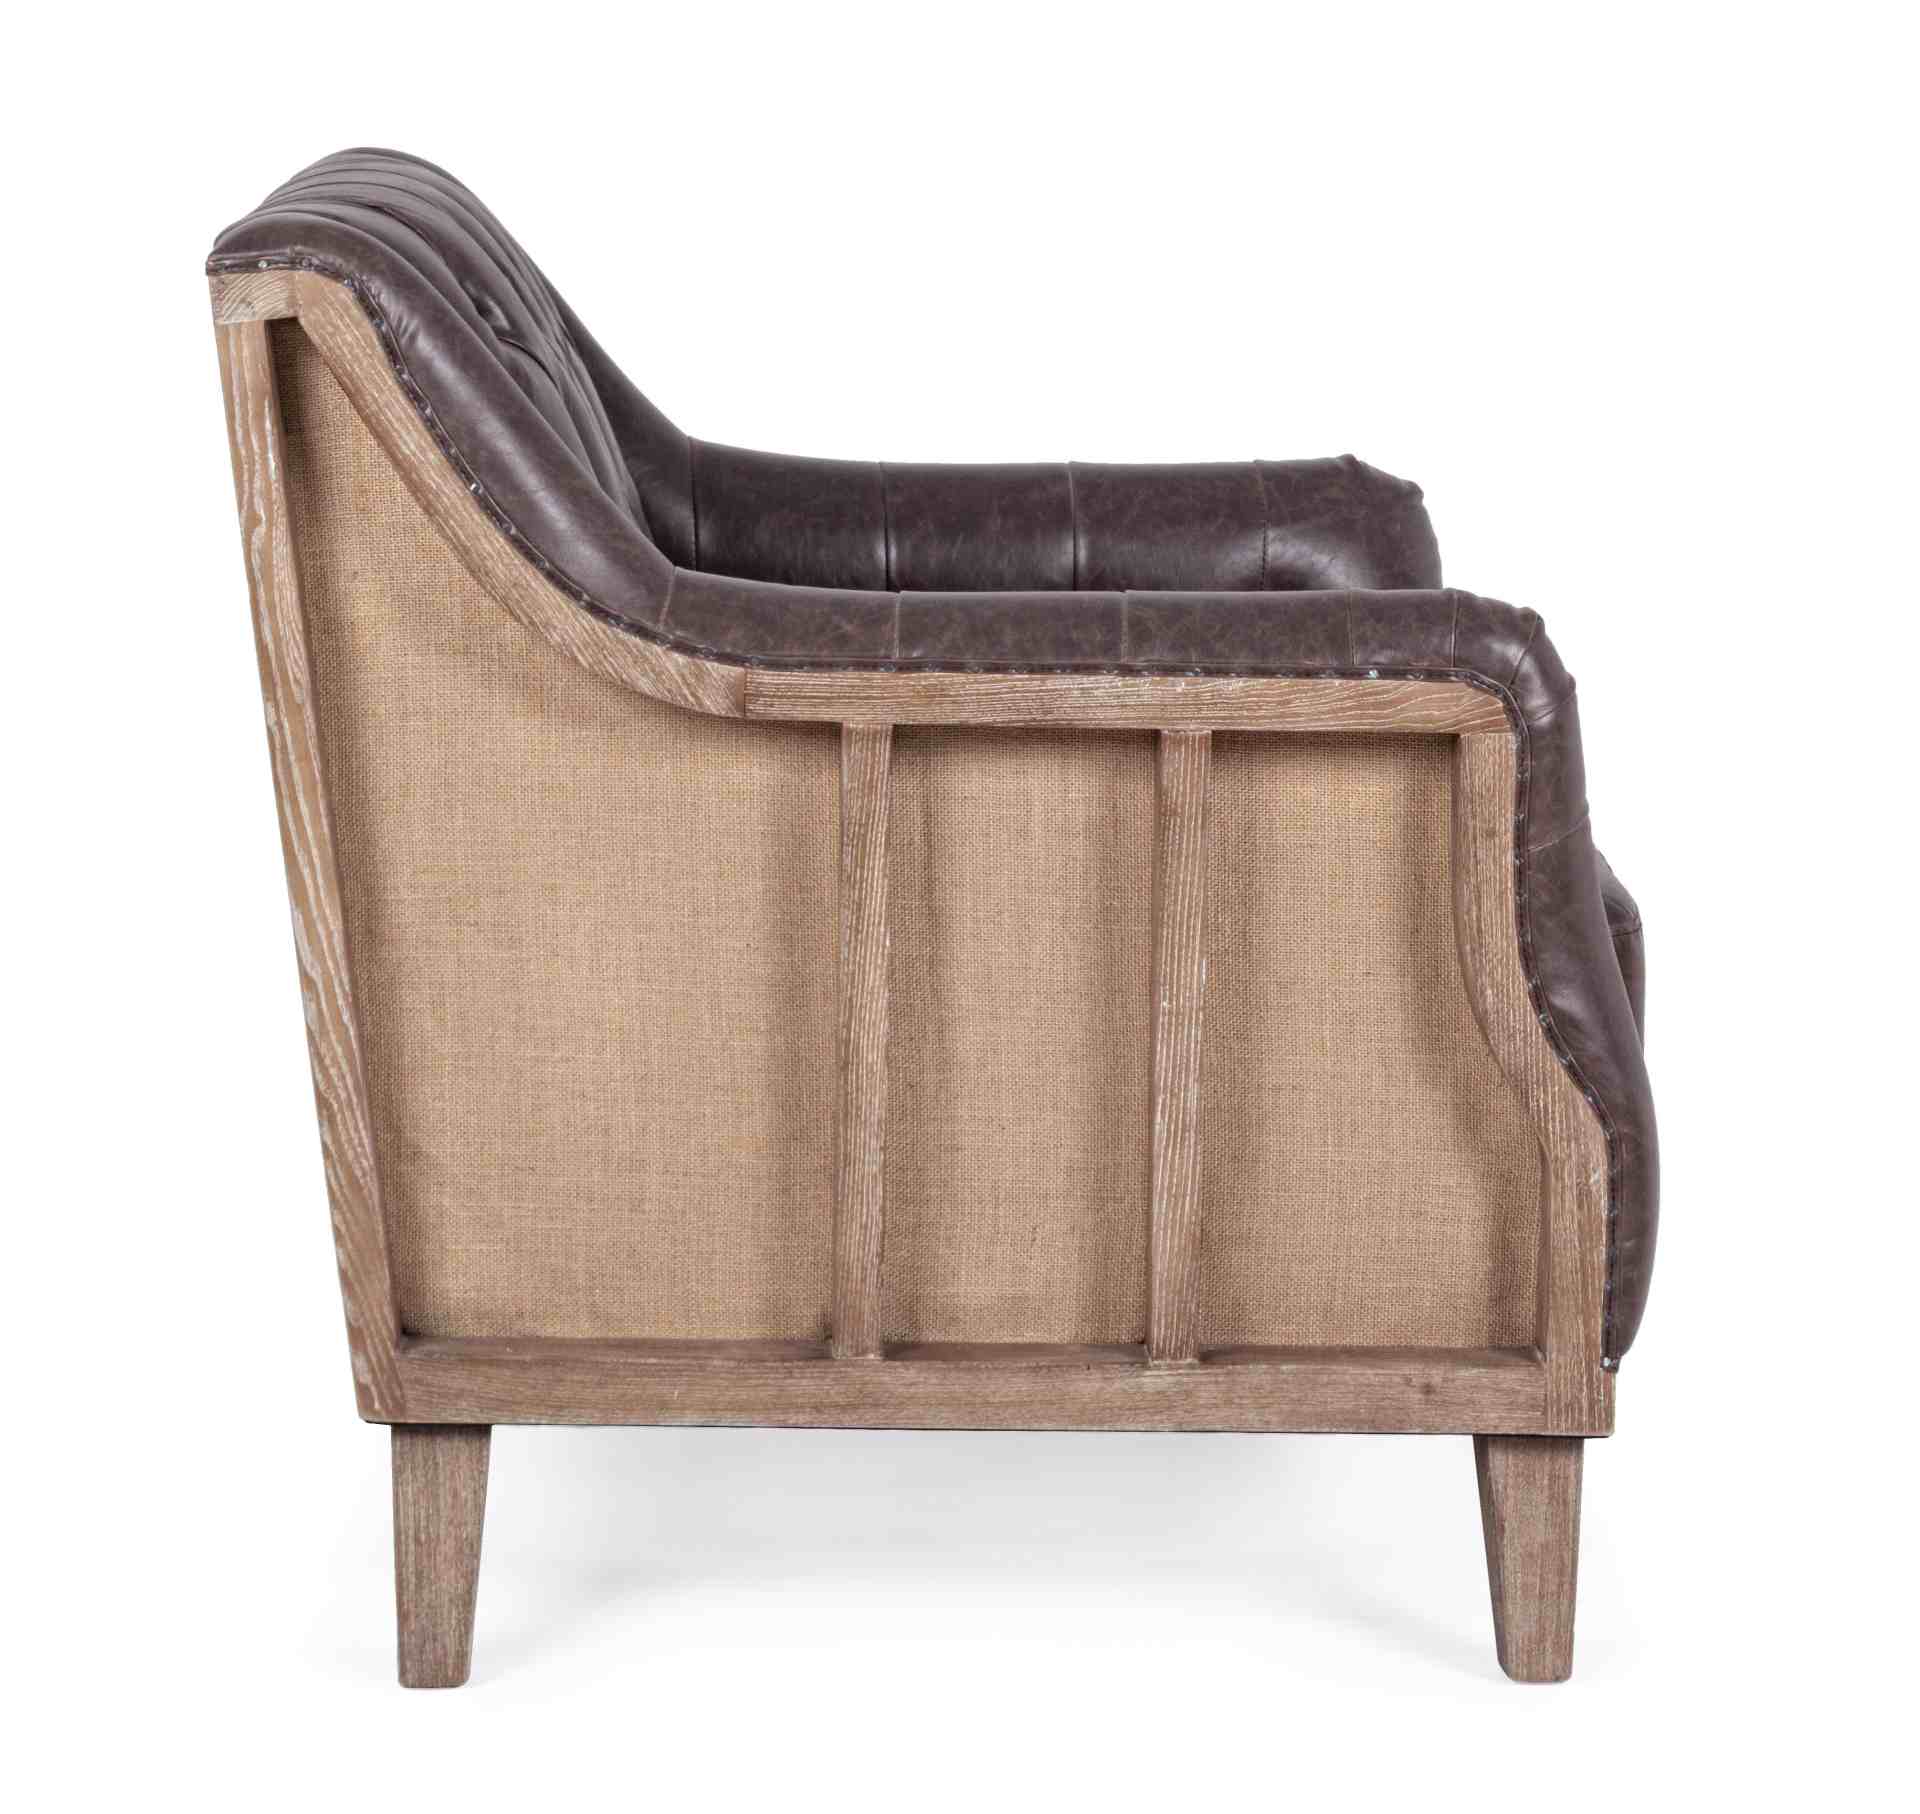 Der Sessel Raymond überzeugt mit seinem klassischen Design. Gefertigt wurde er aus Kunstleder, welches einen braunen Farbton besitzt. Das Gestell ist aus Eschenholz und hat eine natürliche Farbe. Der Sessel besitzt eine Sitzhöhe von 49 cm. Die Breite betr